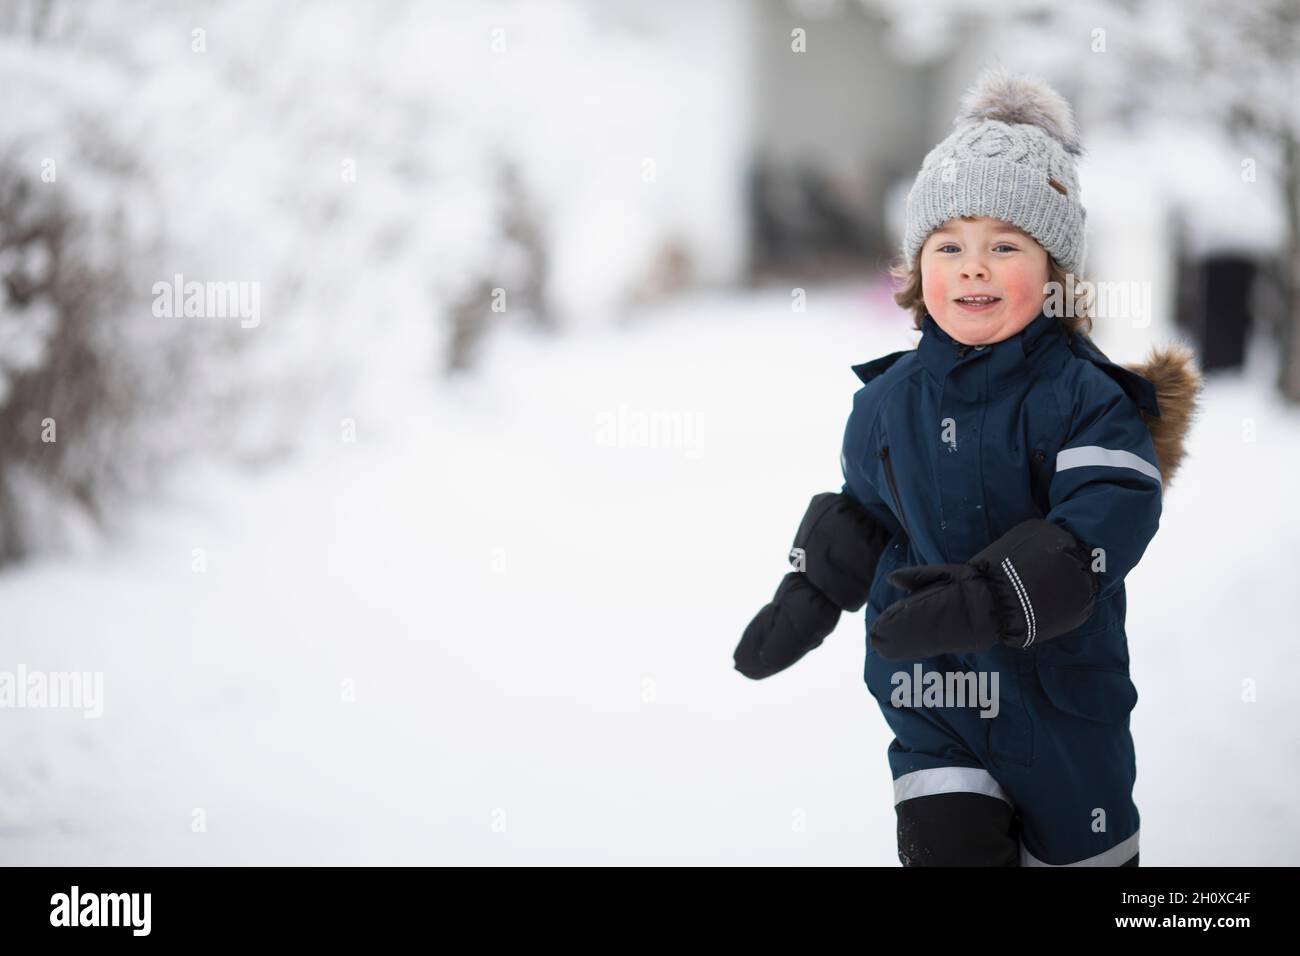 Un garçon souriant en hiver, regardant un appareil photo Banque D'Images